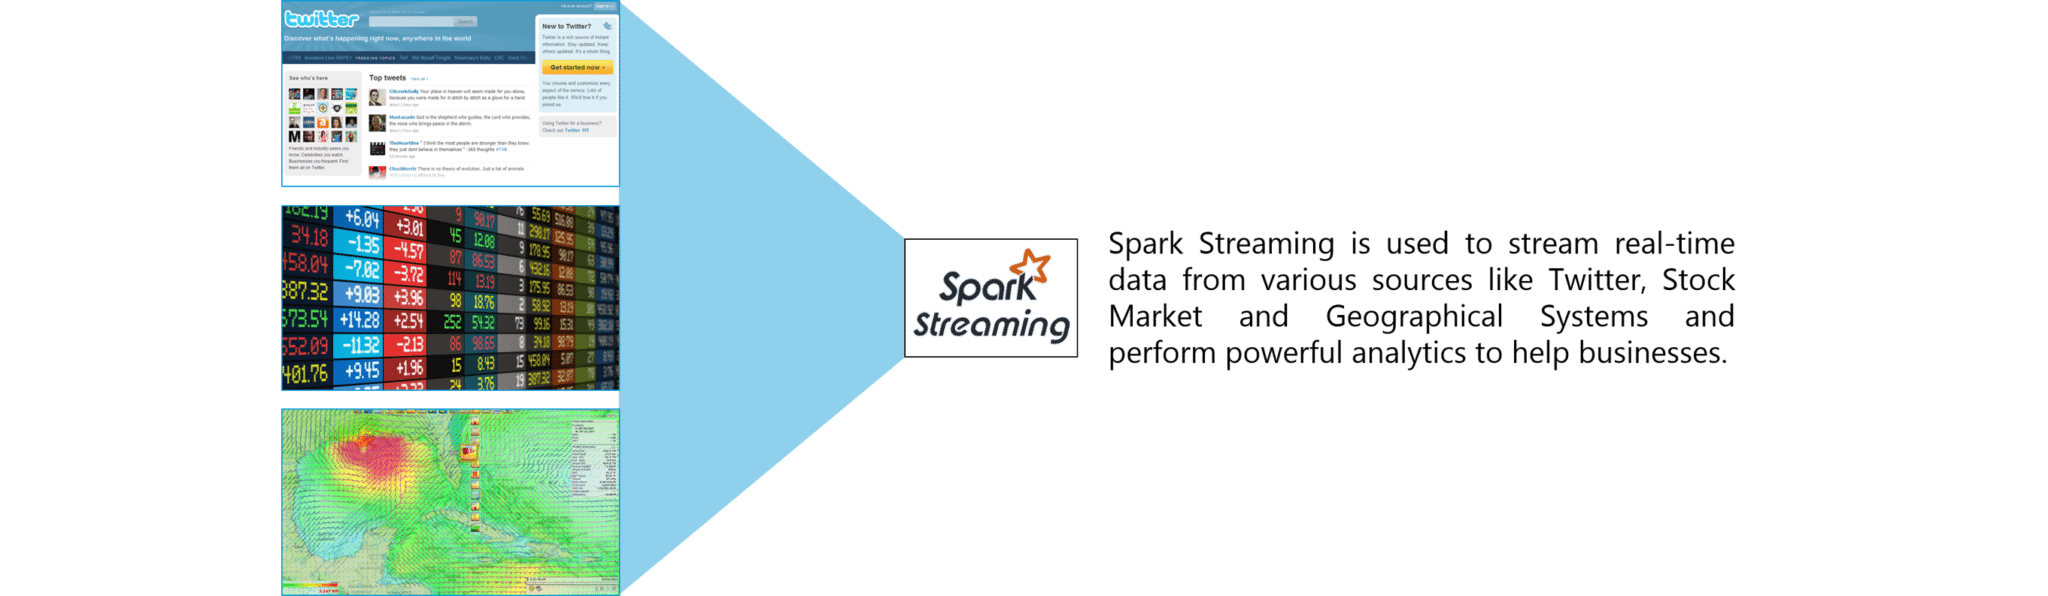 Spark-Streaming-Spark-Tutorial-Edureka-3.png